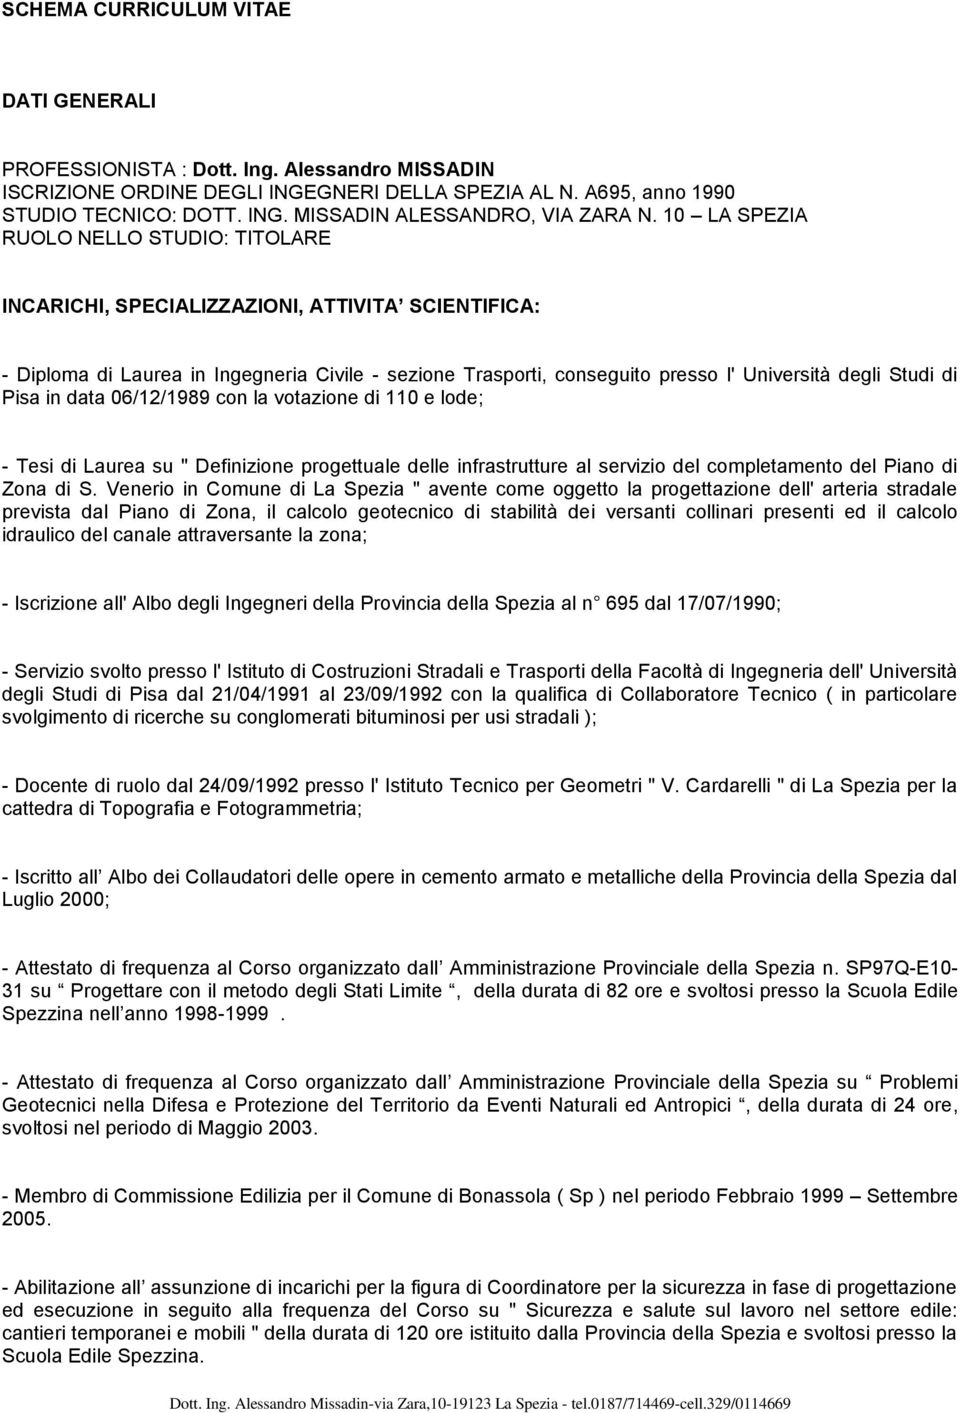 Pisa in data 06/12/1989 cn la vtazine di 110 e lde; - Tesi di Laurea su " Definizine prgettuale delle infrastrutture al servizi del cmpletament del Pian di Zna di S.